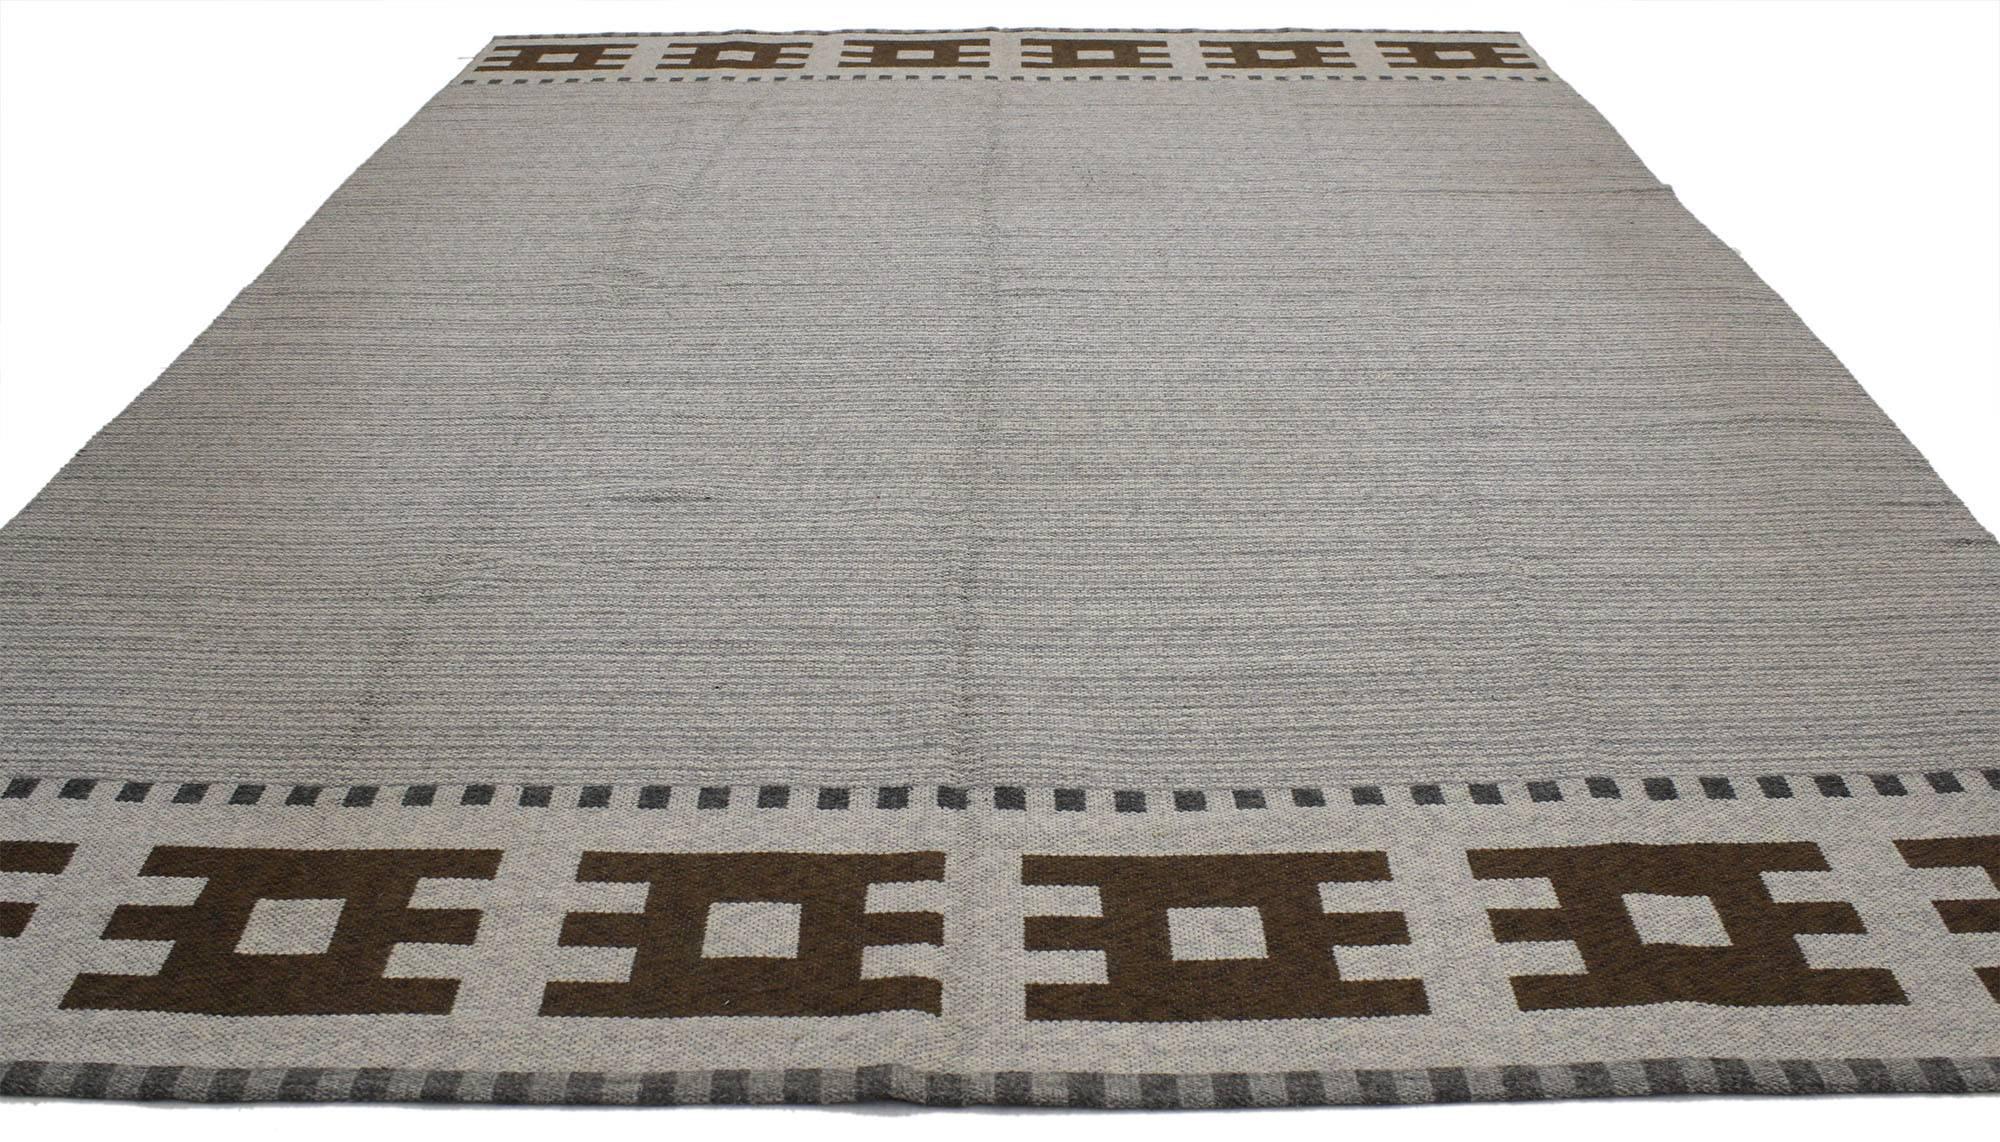 77037, tapis Kilim suédois vintage de style Scandinavian Modern - tapis Rollakan à tissage plat. Ce tapis Kilim suédois vintage en laine tissé à la main, de style scandinave moderne, présente un champ rayé gris abrash. Il est entouré de bandes de